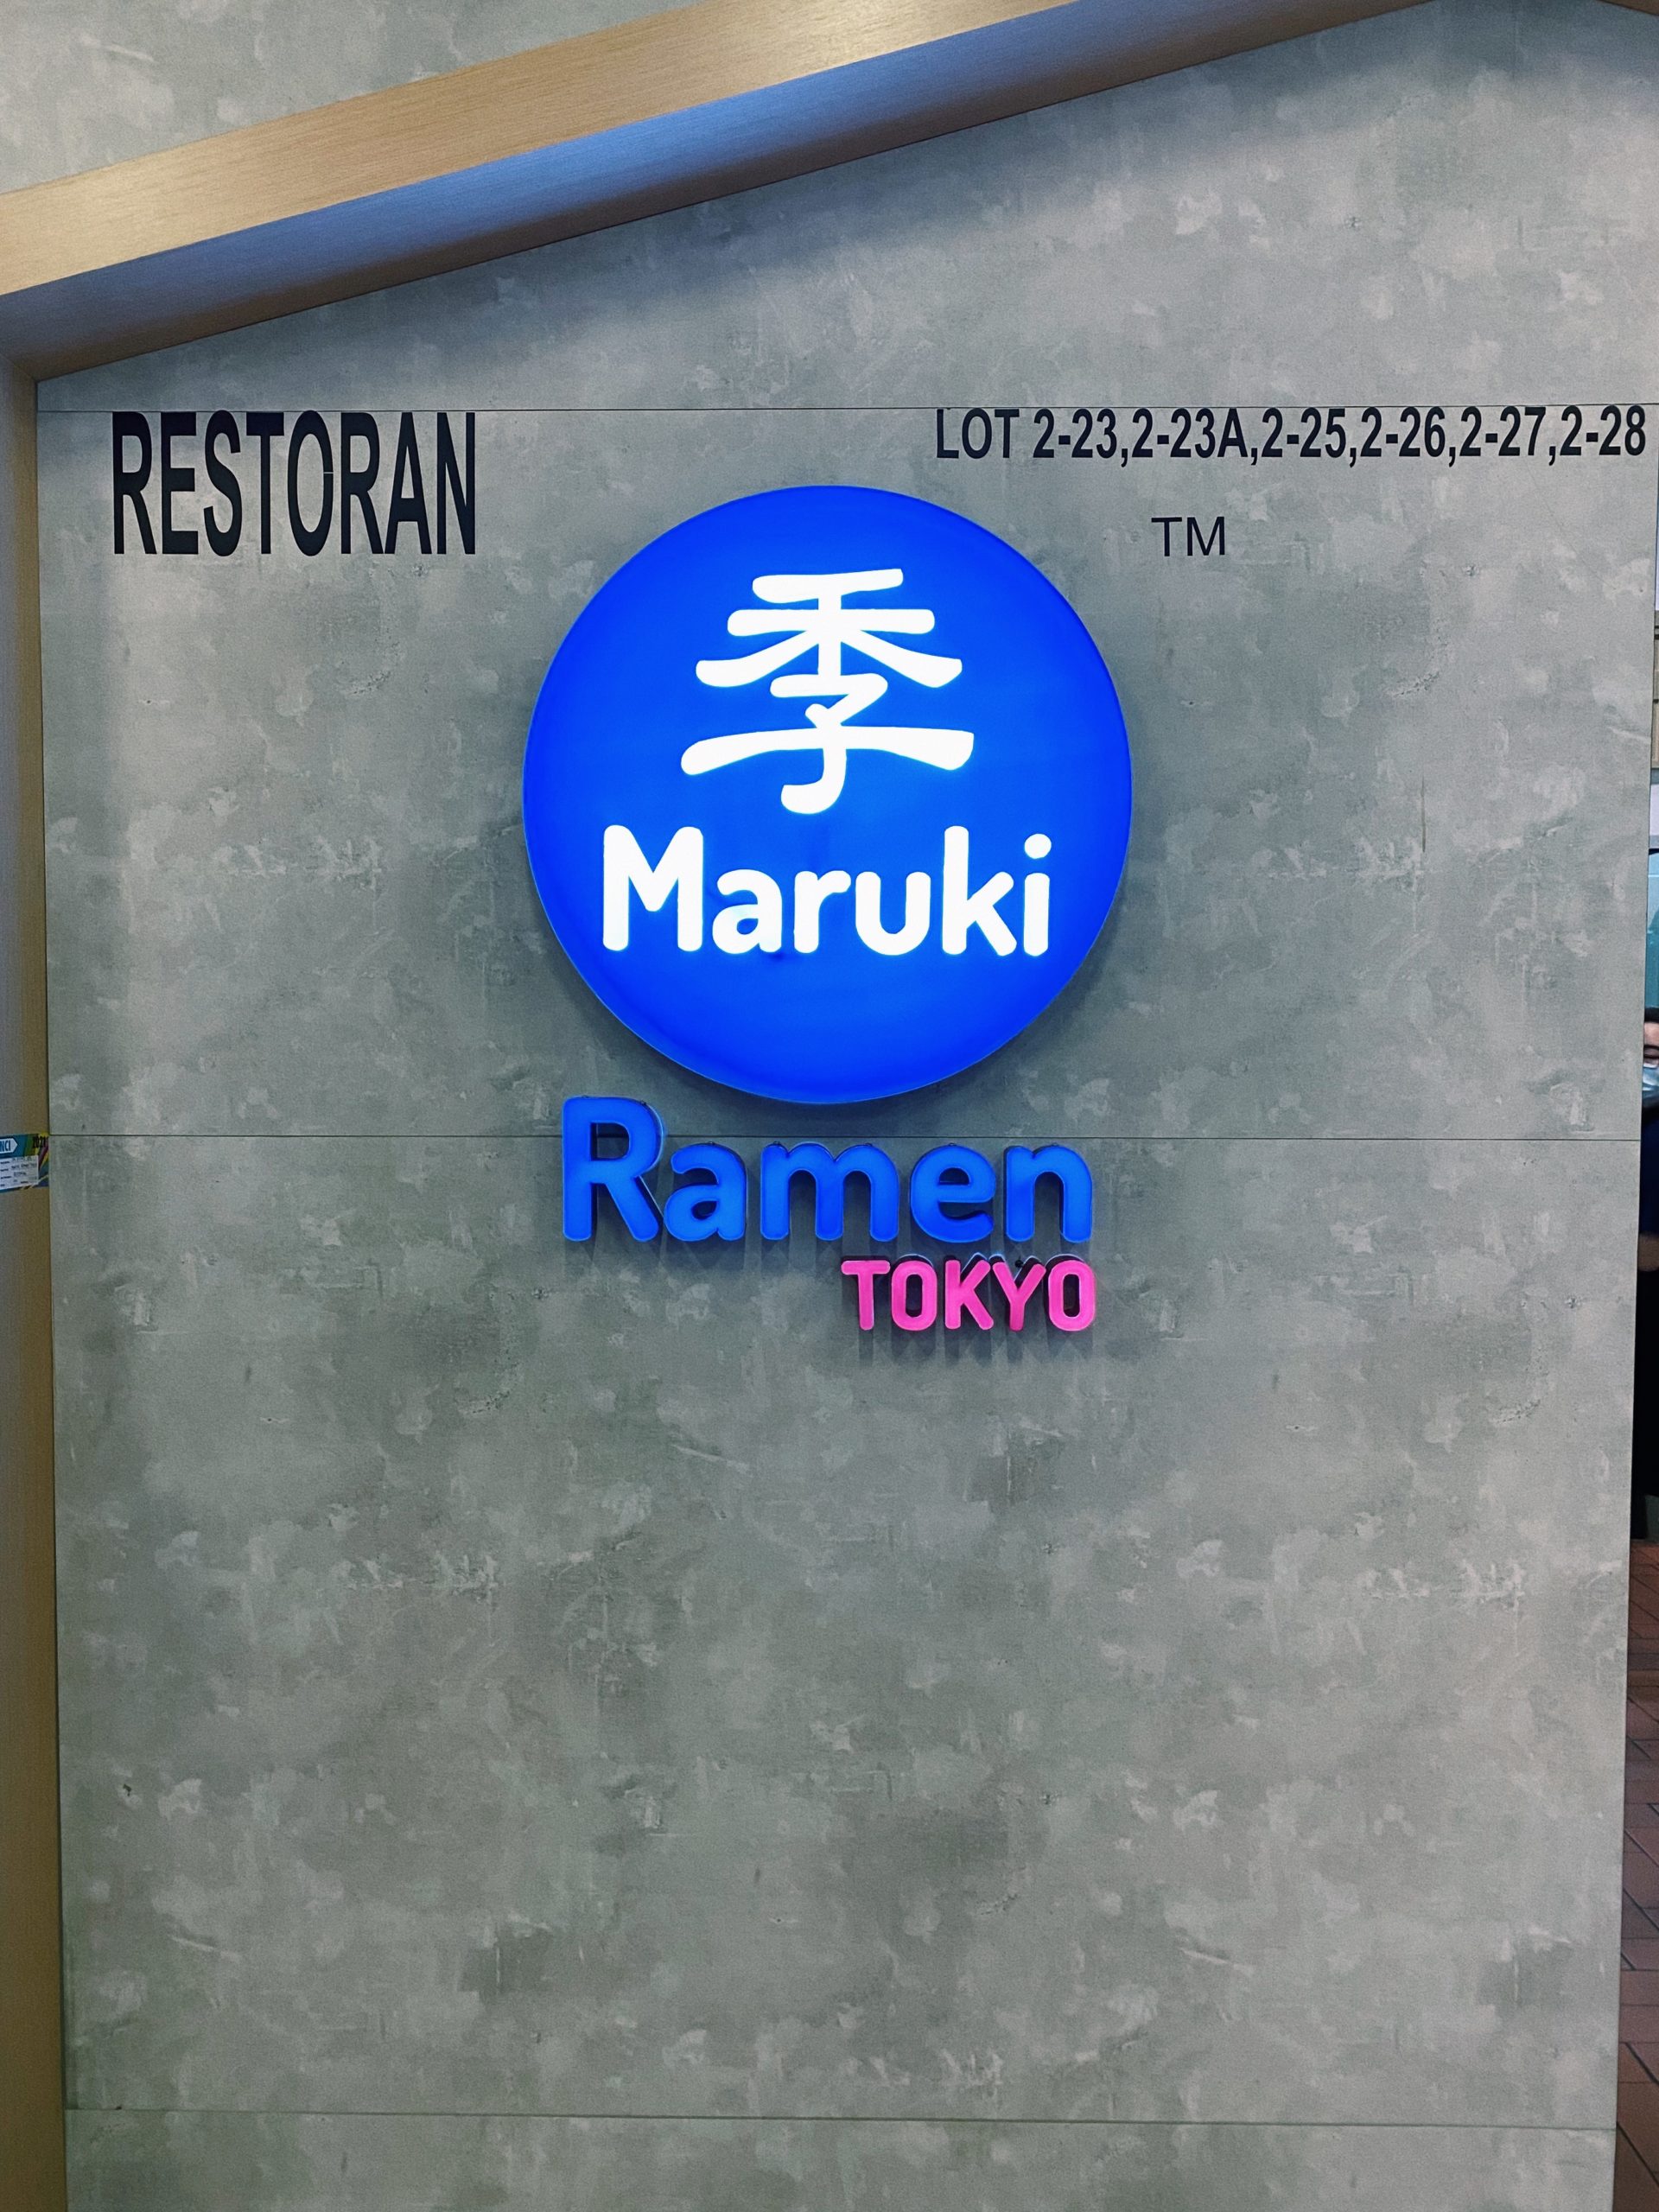 Maruki ramen tokyo at the linc kl